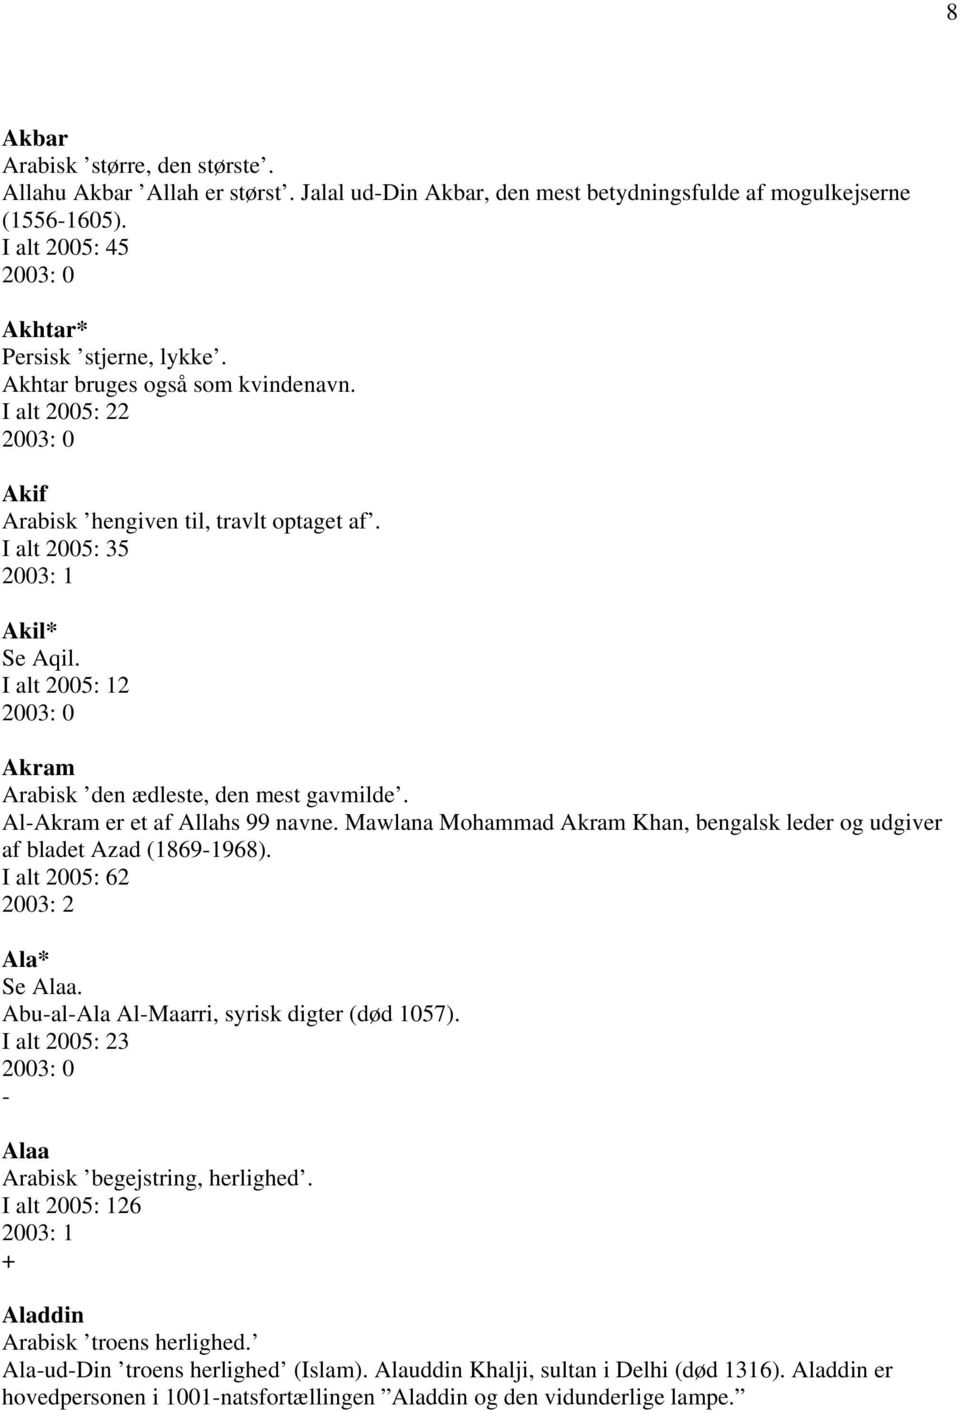 Al-Akram er et af Allahs 99 navne. Mawlana Mohammad Akram Khan, bengalsk leder og udgiver af bladet Azad (1869-1968). I alt 2005: 62 Ala* Se Alaa. Abu-al-Ala Al-Maarri, syrisk digter (død 1057).